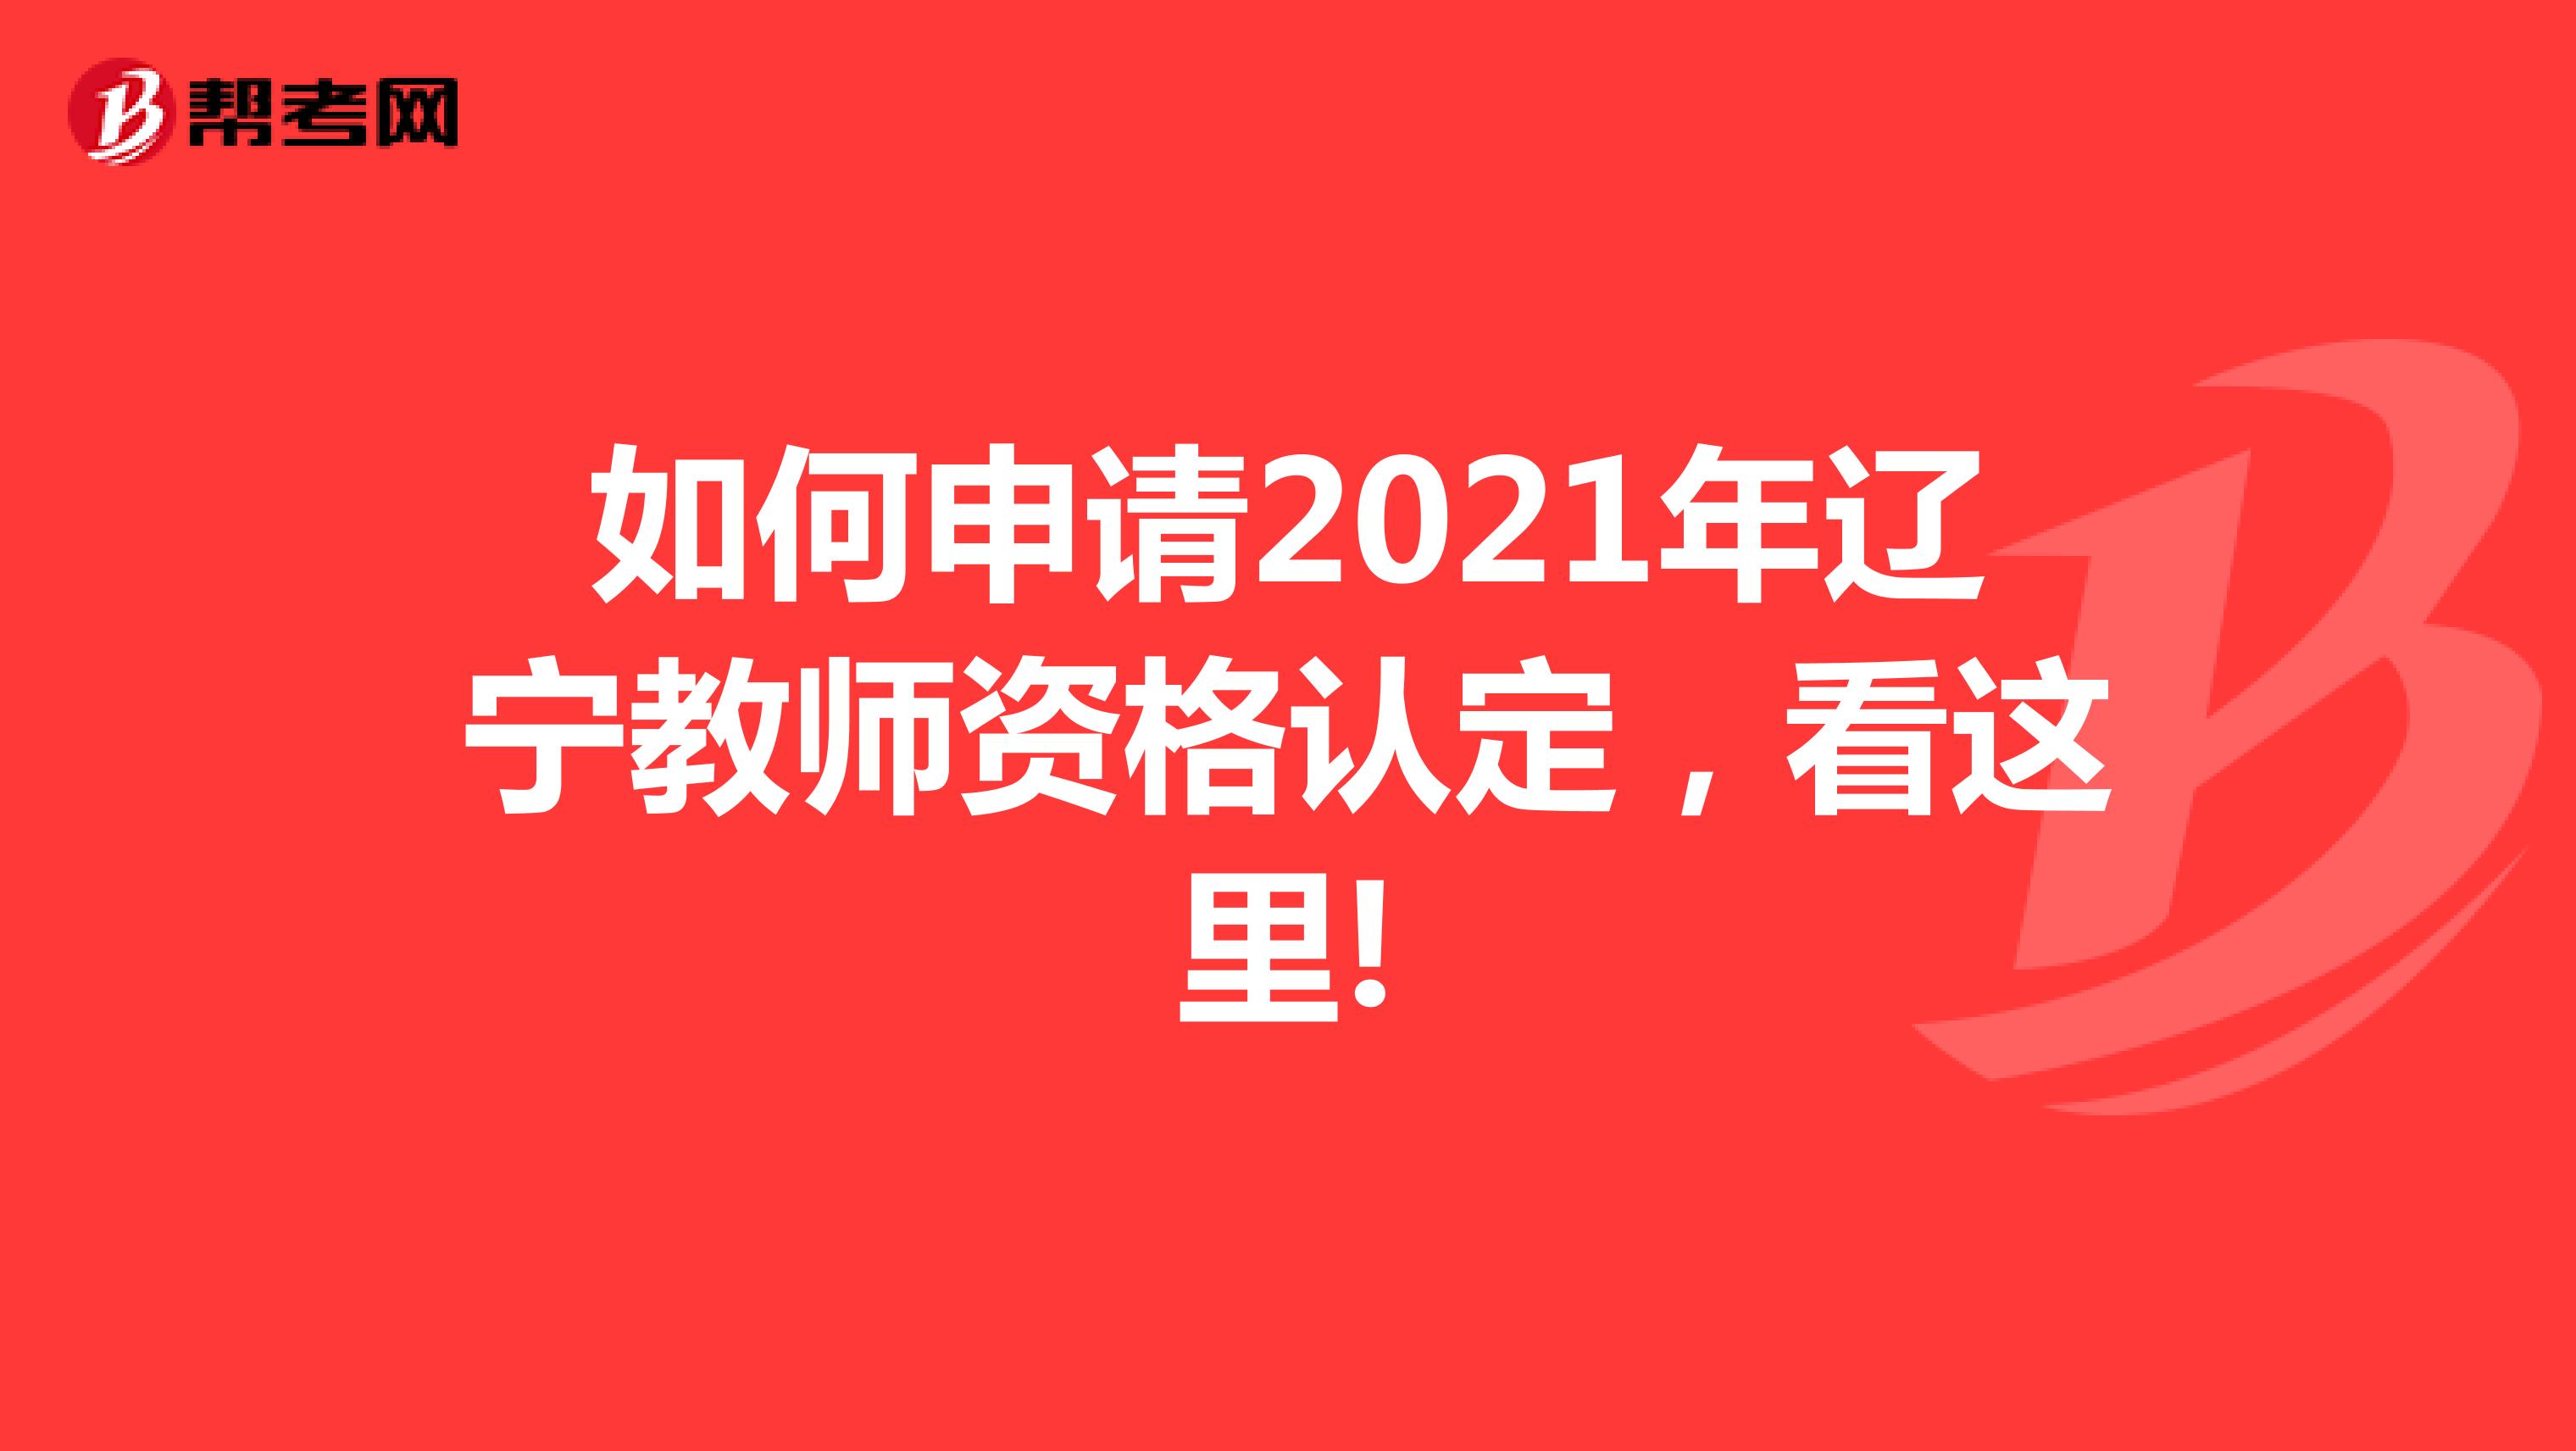 如何申请2021年辽宁教师资格认定，看这里!